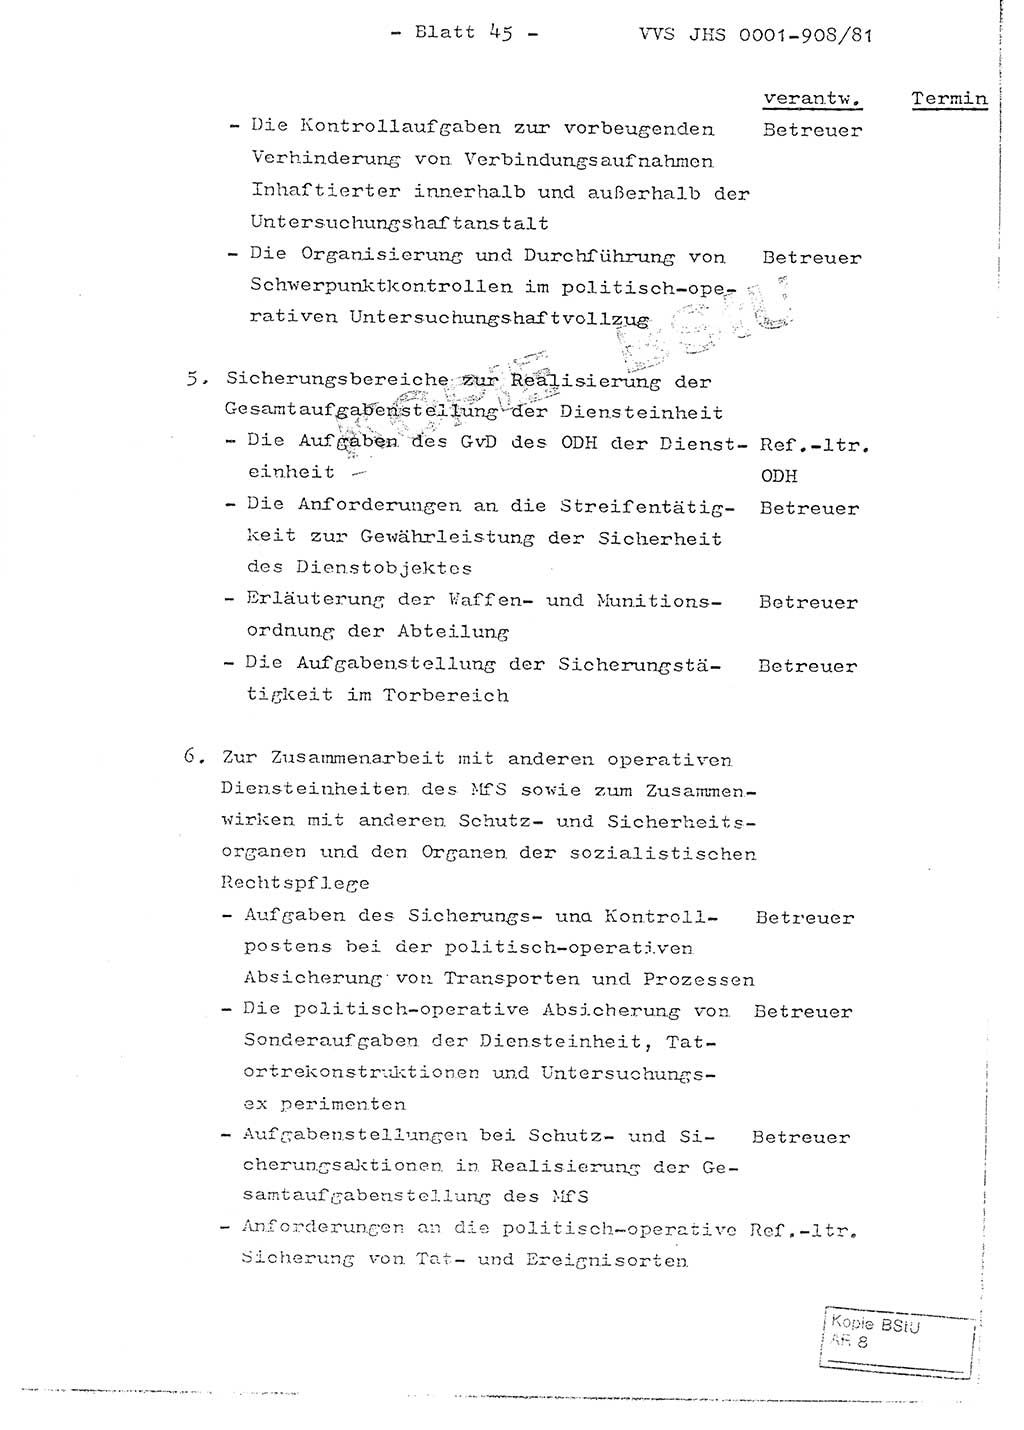 Fachschulabschlußarbeit Oberleutnant Wolfgang Wittmann (Abt. ⅩⅣ), Ministerium für Staatssicherheit (MfS) [Deutsche Demokratische Republik (DDR)], Juristische Hochschule (JHS), Vertrauliche Verschlußsache (VVS) o001-908/82, Potsdam 1982, Blatt 45 (FS-Abschl.-Arb. MfS DDR JHS VVS o001-908/82 1982, Bl. 45)